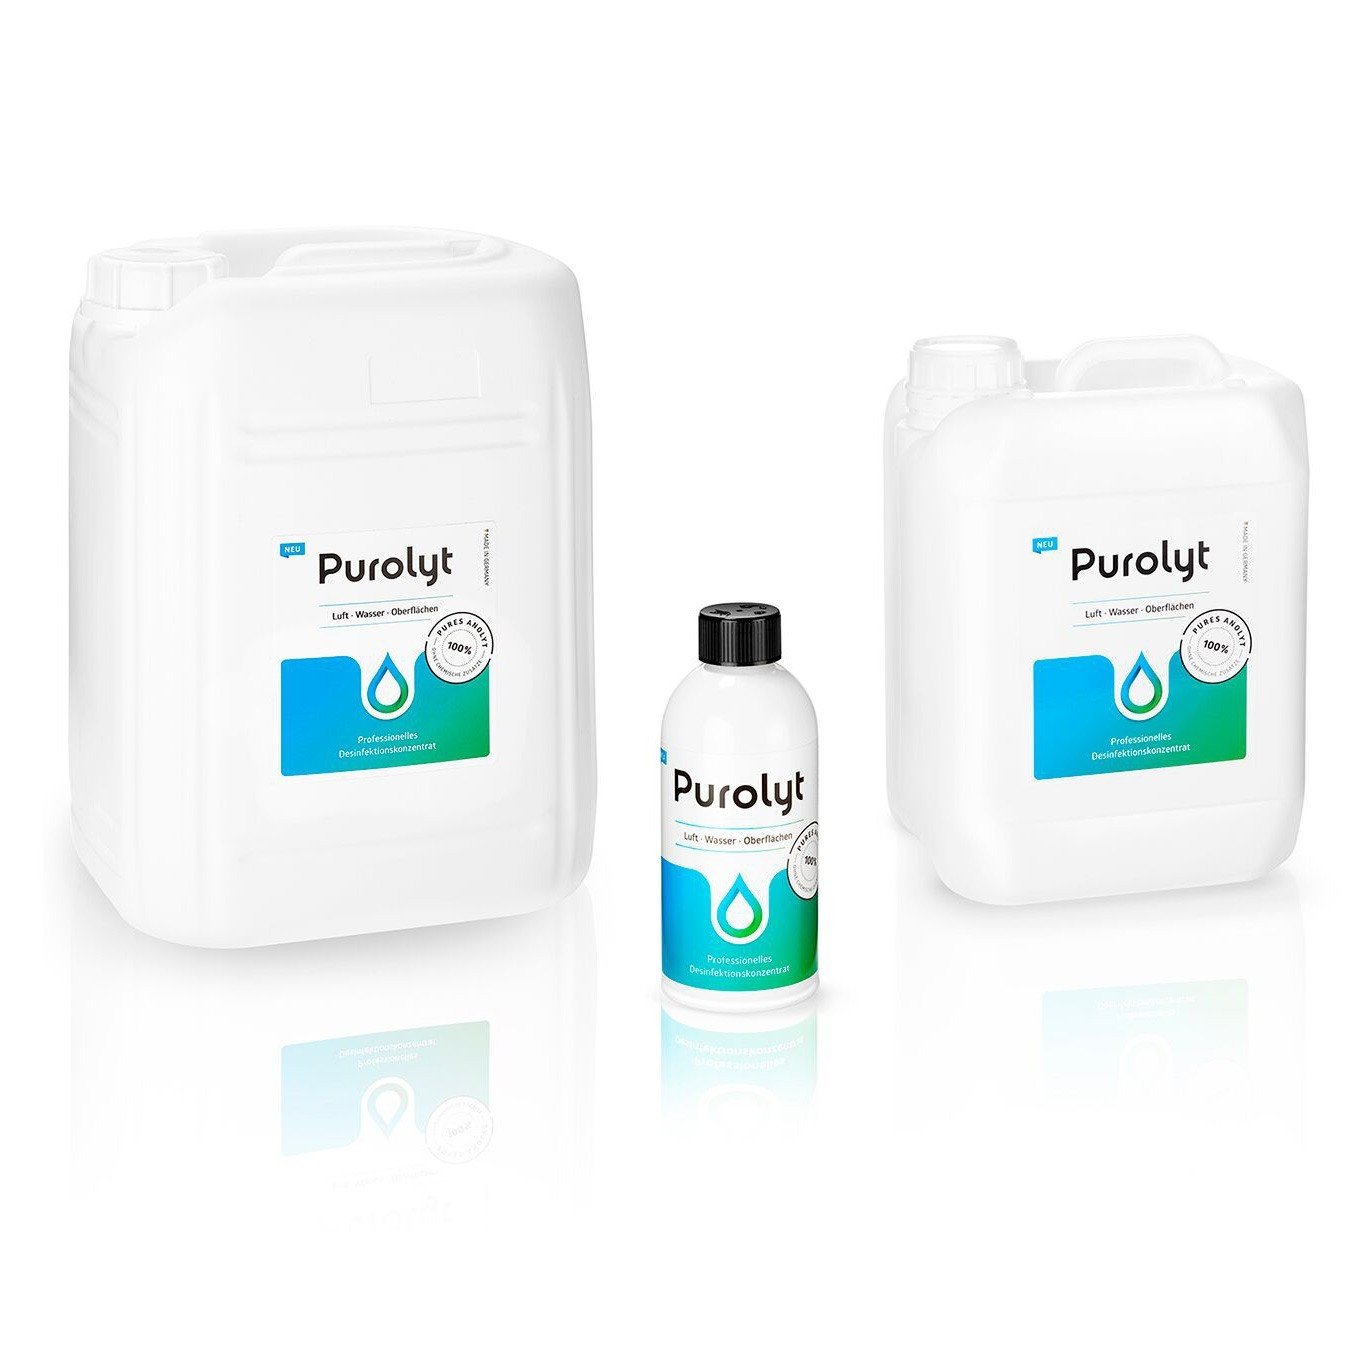 Purolyt - Flüssiges Desinfektionsmittel für den Beruf - 500mL